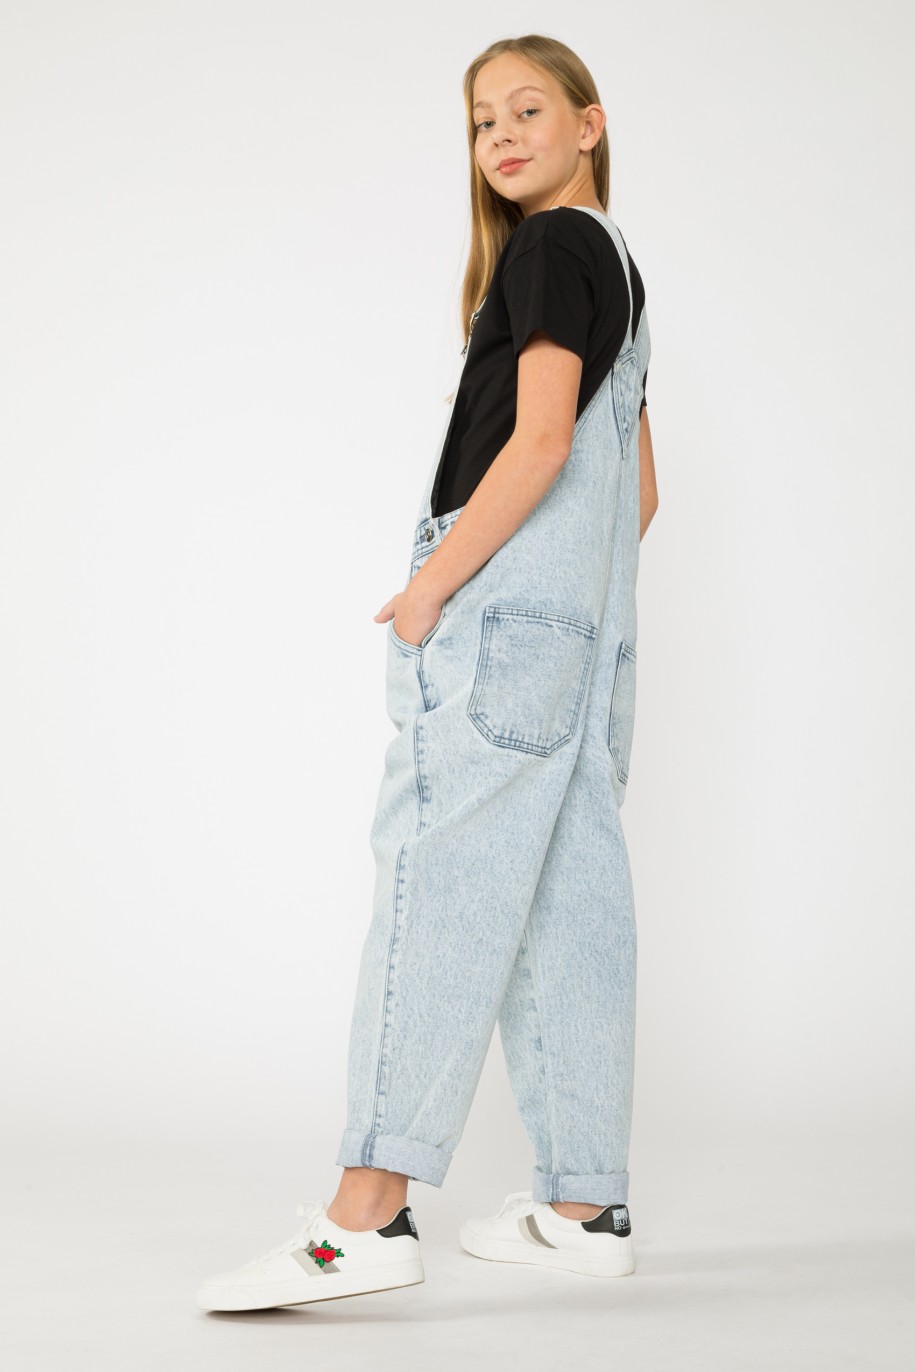 Jeansowe długie ogrodniczki dla dziewczyny - 33608